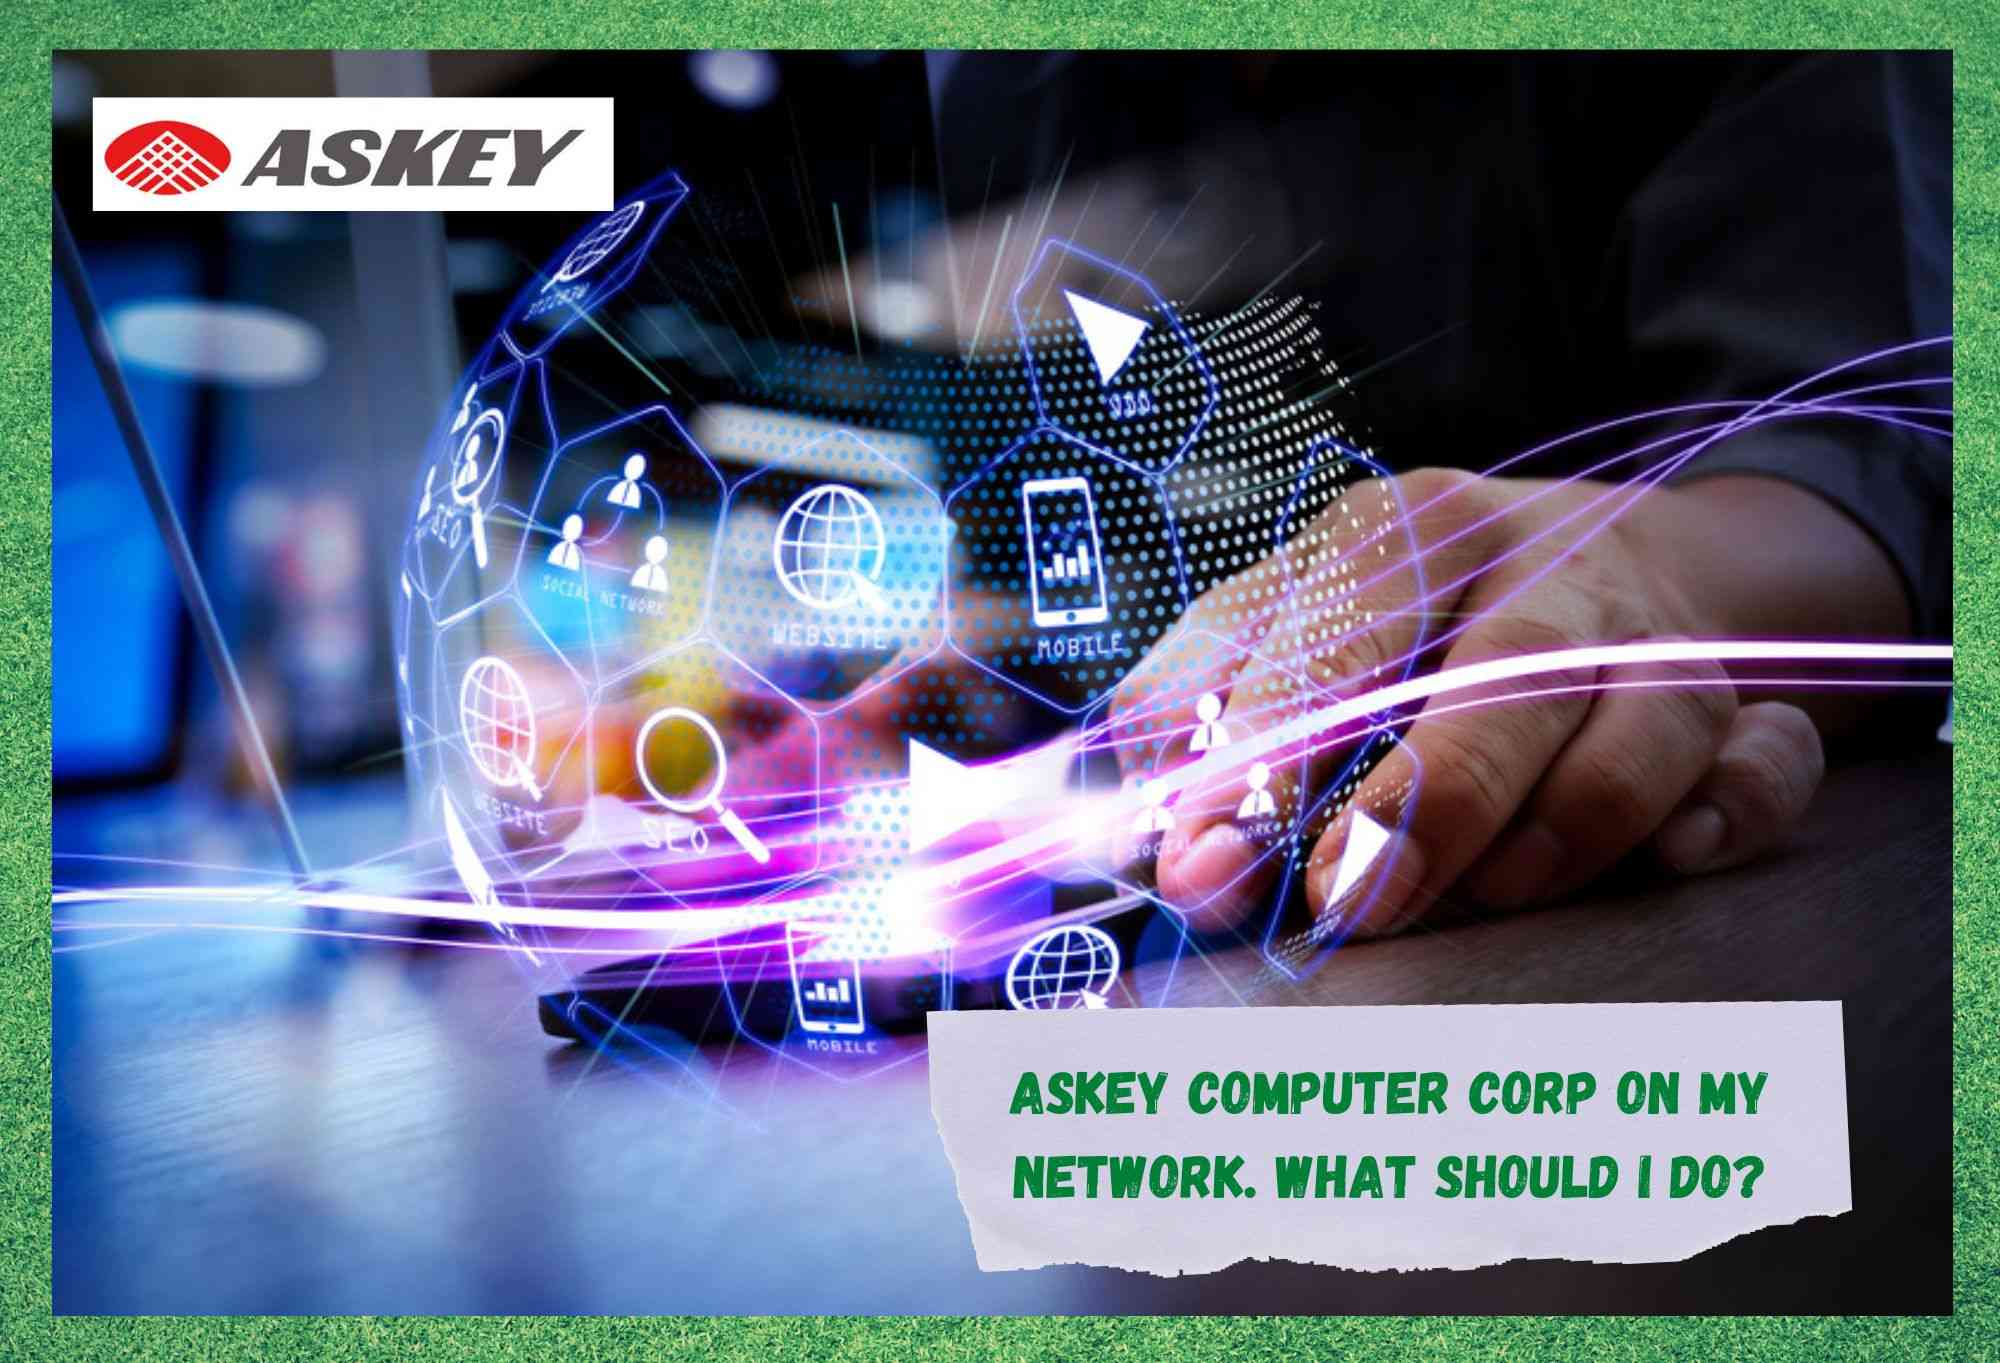 म किन मेरो नेटवर्कमा Askey कम्प्युटर कर्प देख्दै छु?